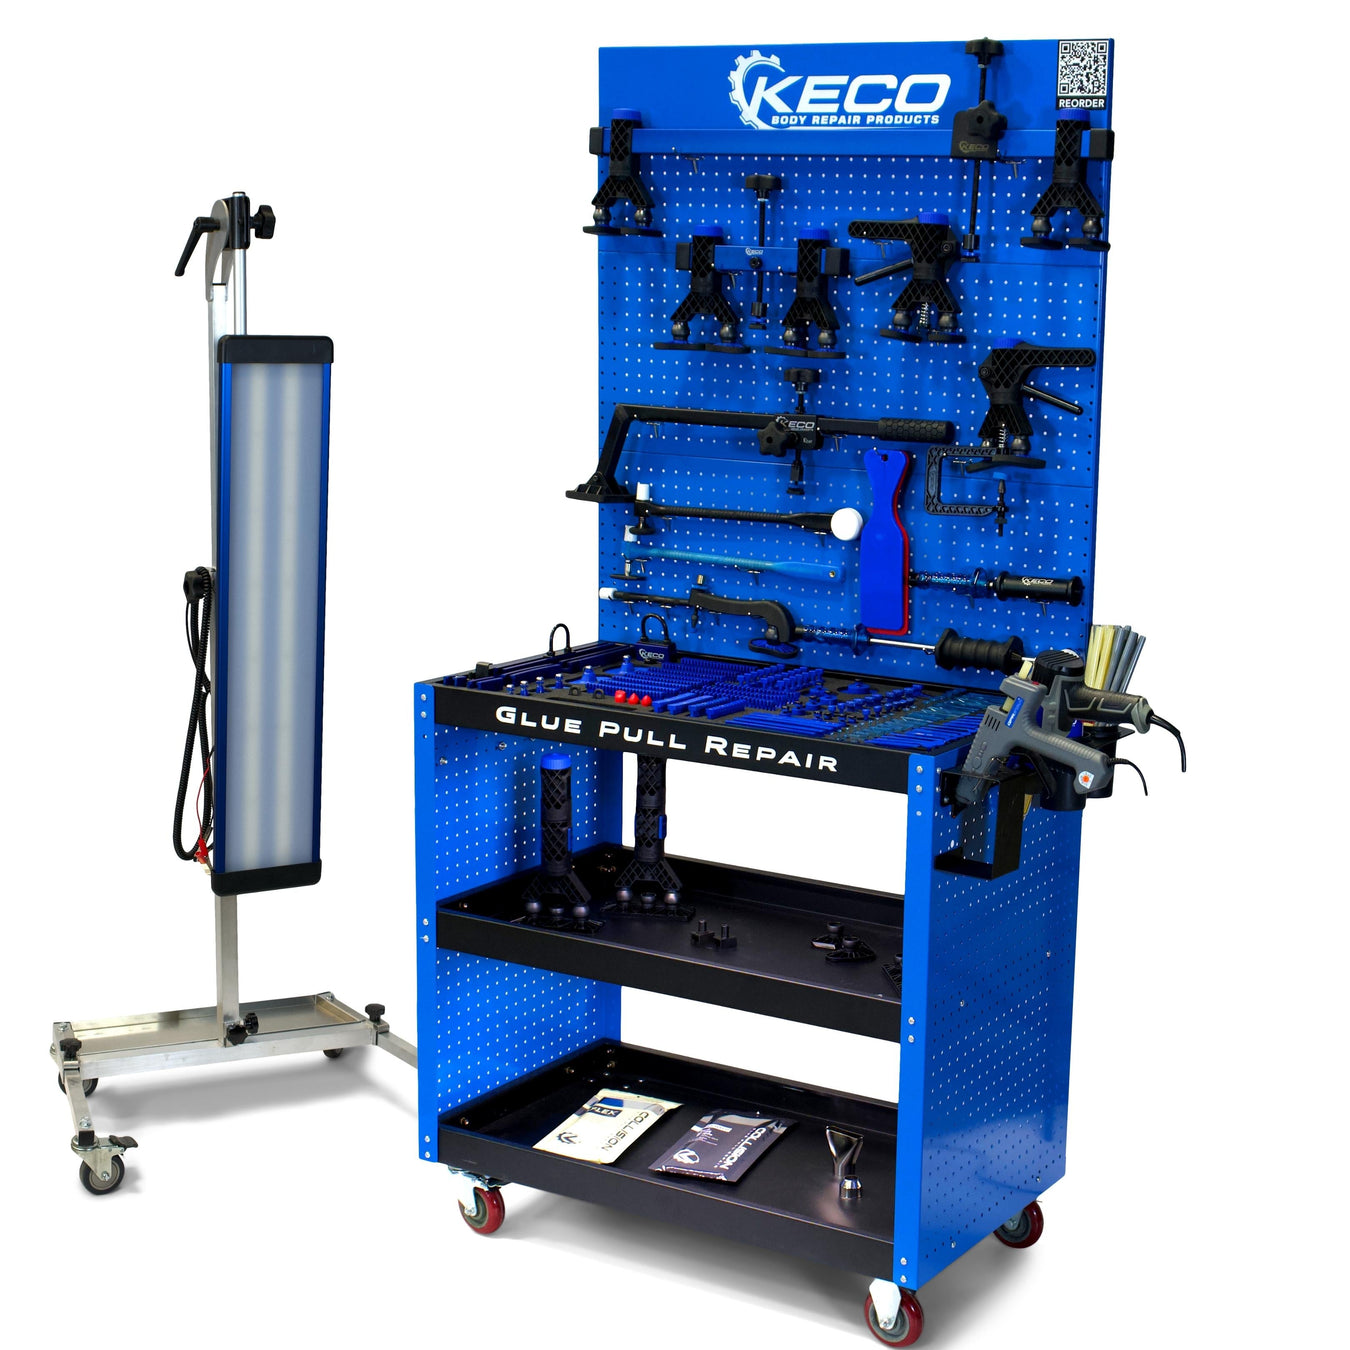 Keco Glue Pull Repair System & Kits